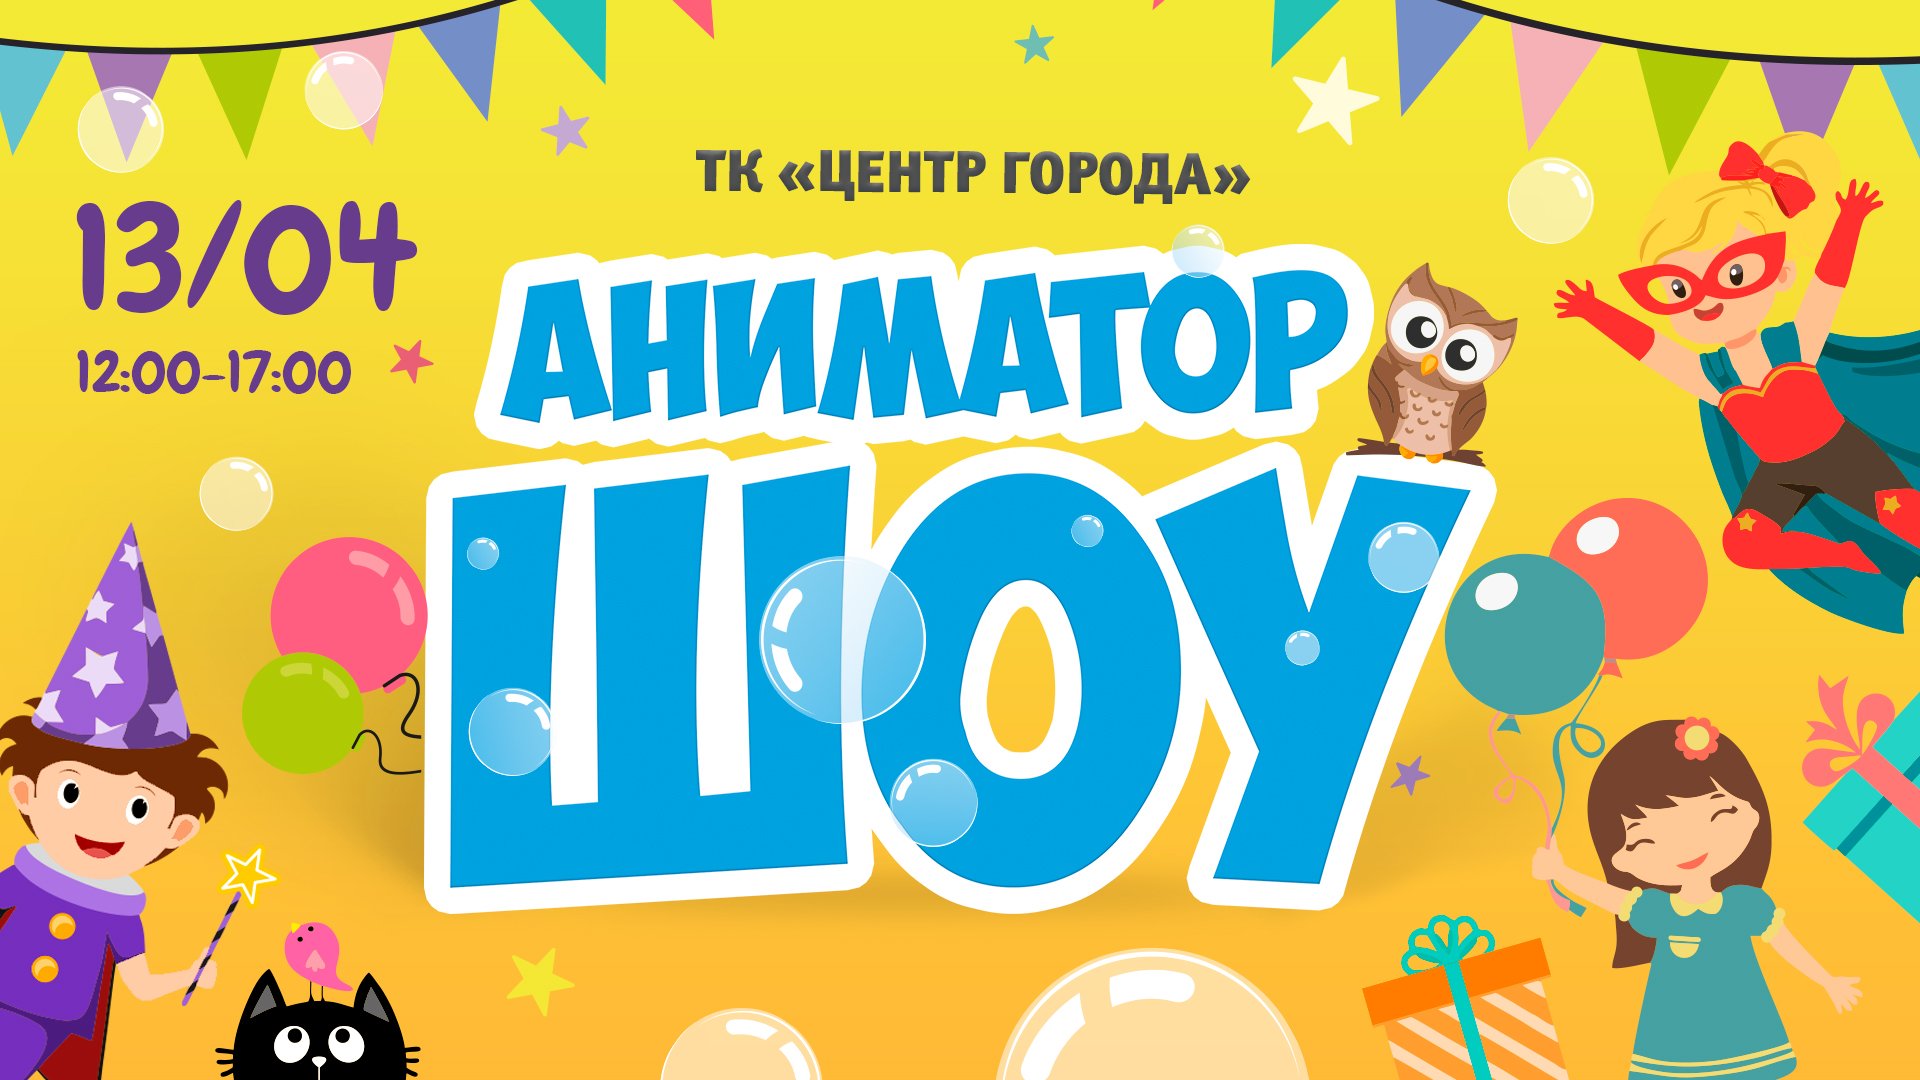 13.04 - Детское аниматор-шоу с 12 до 17 часов!